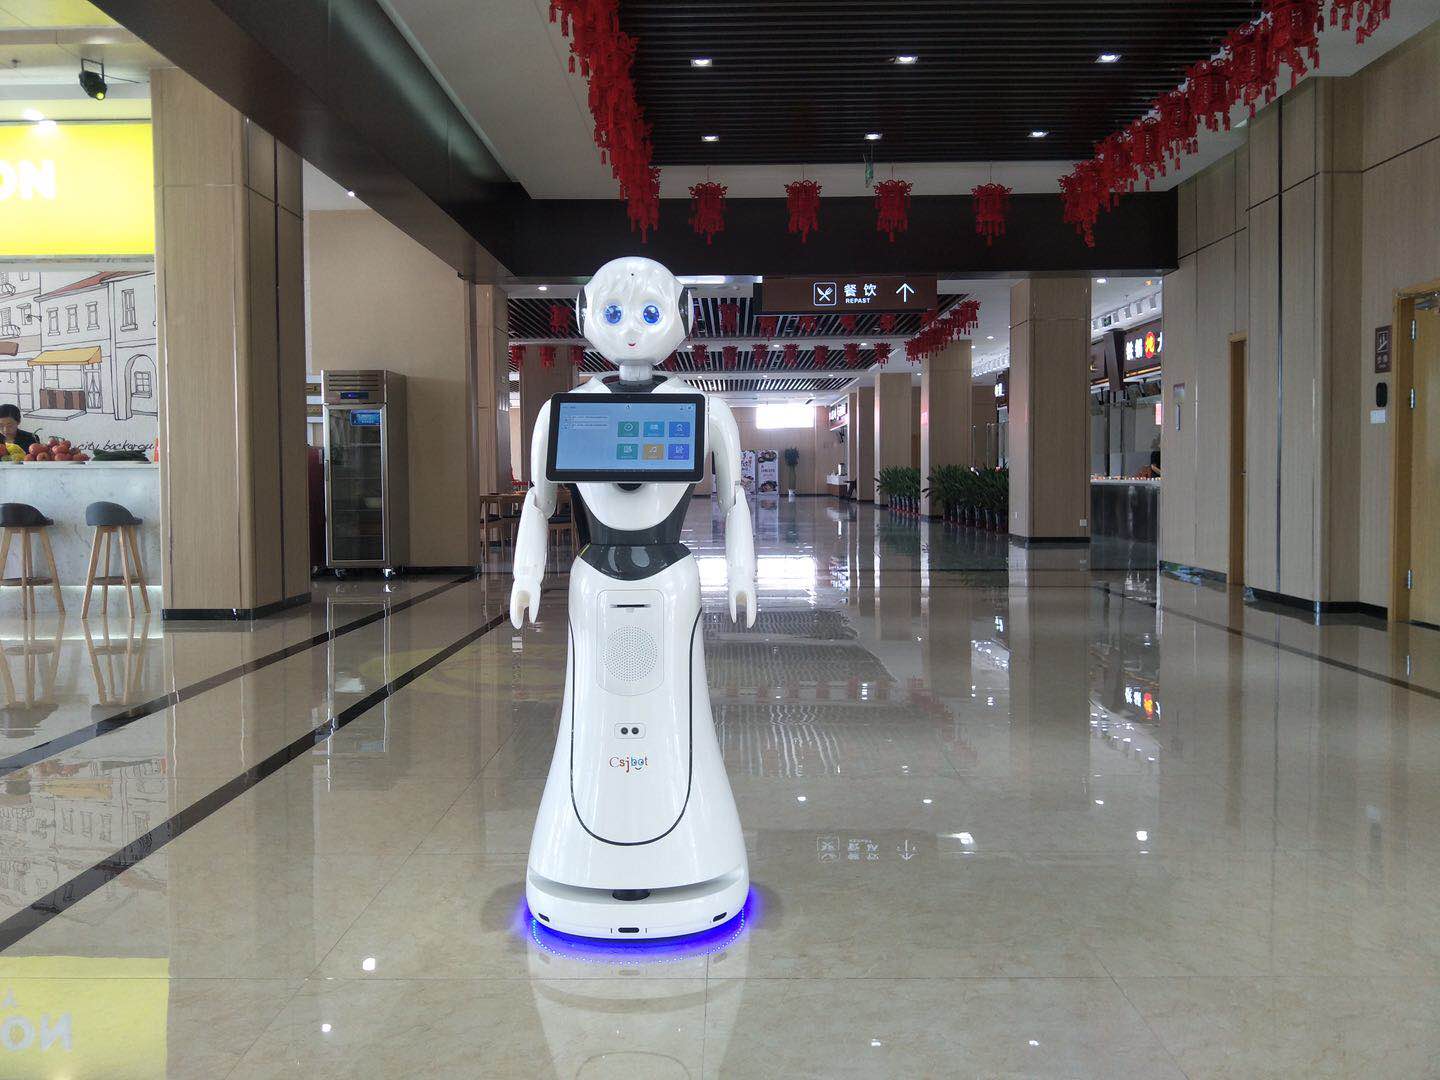 安徽**展厅讲解机器人* 和谐共赢 昆山新正源机器人智能科技供应